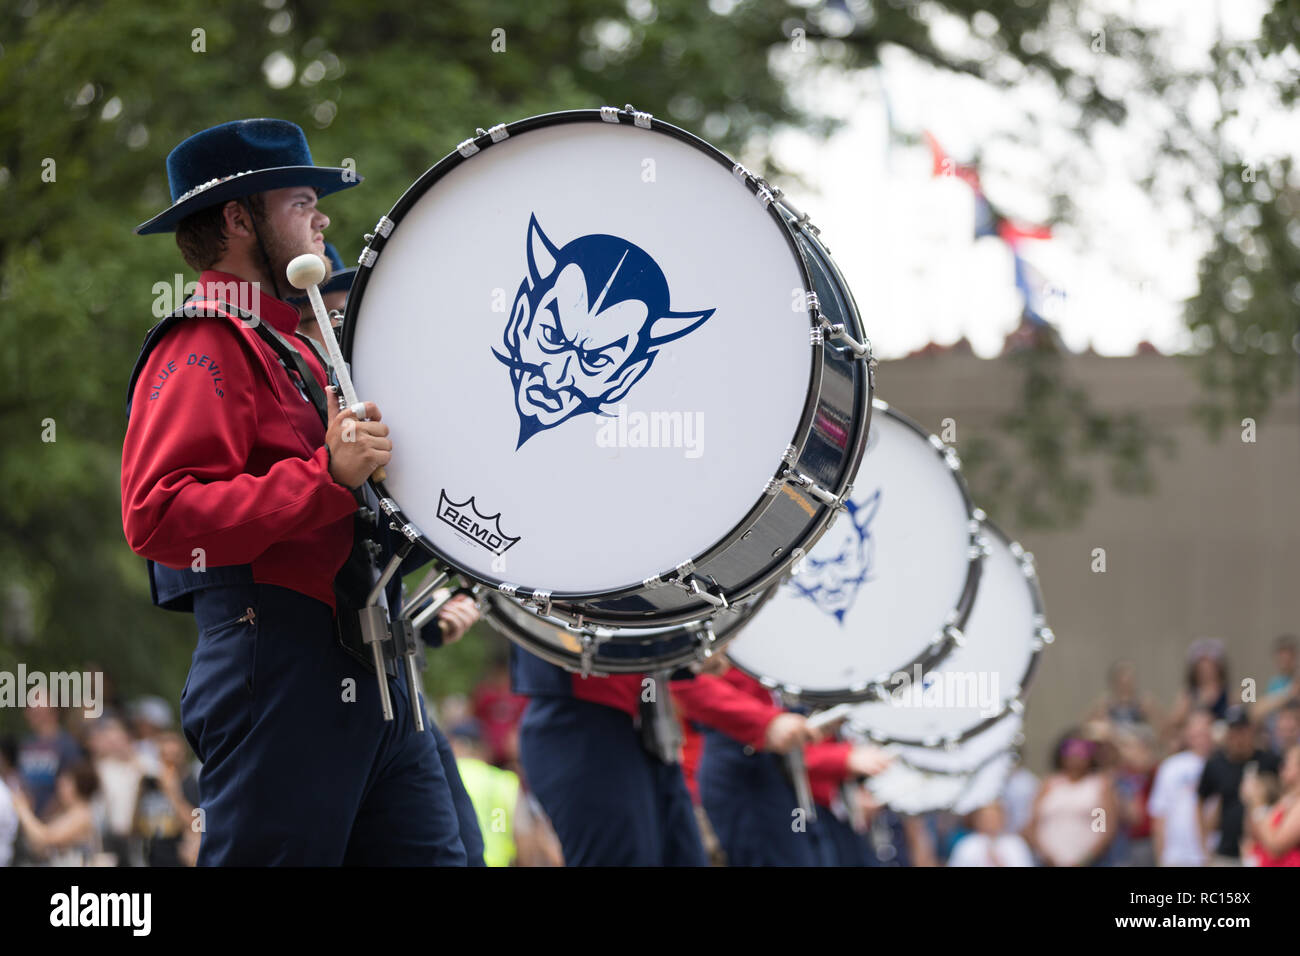 Washington, D.C., USA - 4 juillet 2018, le jour de l'indépendance nationale, le défilé Blue Devils Pulaski en fanfare, de Pulaski, New York Banque D'Images